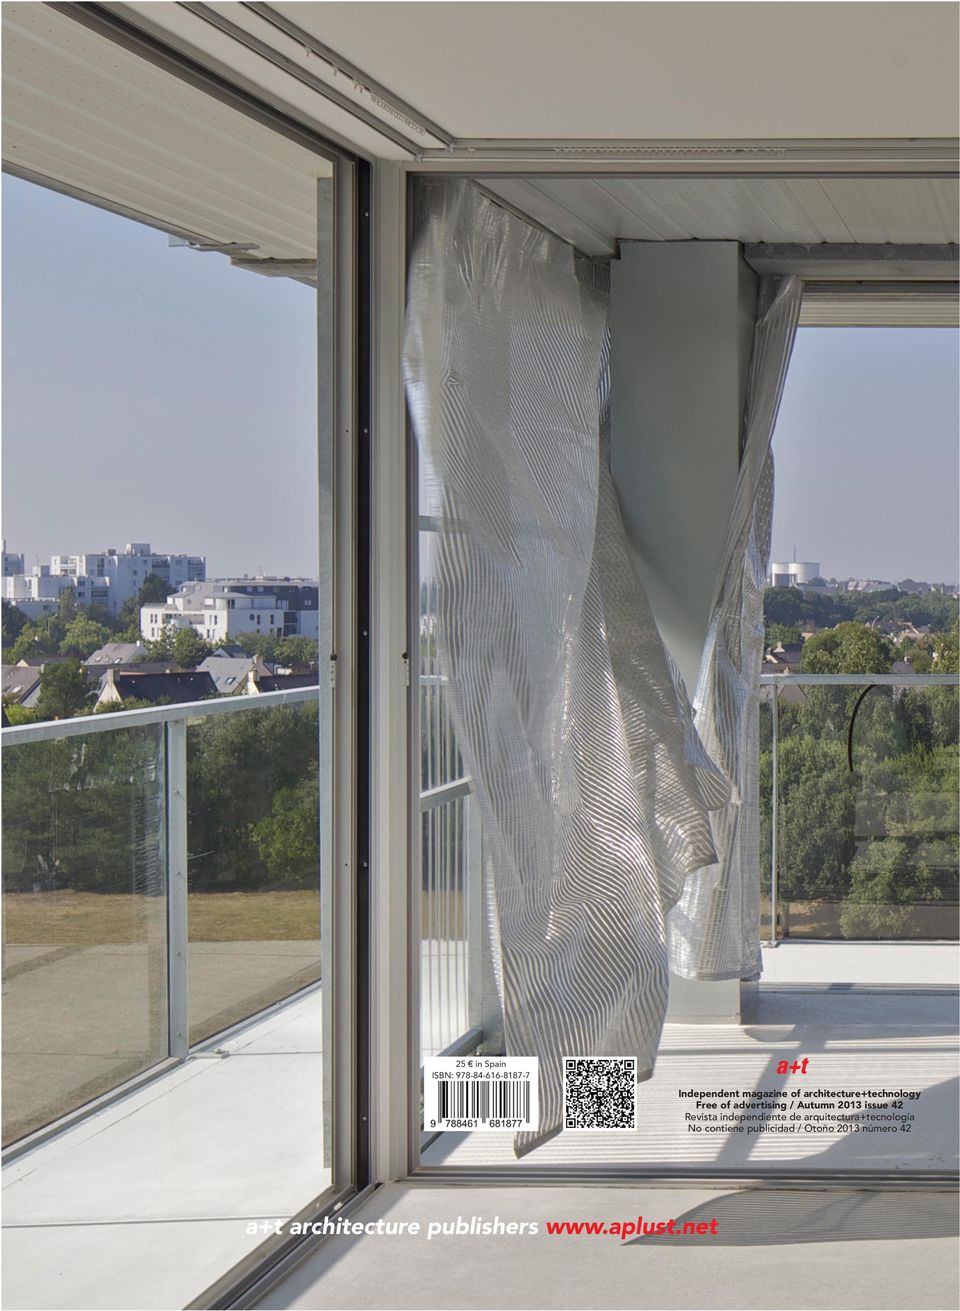 Autumn 2013 issue 42 Revista independiente de arquitectura+tecnología No